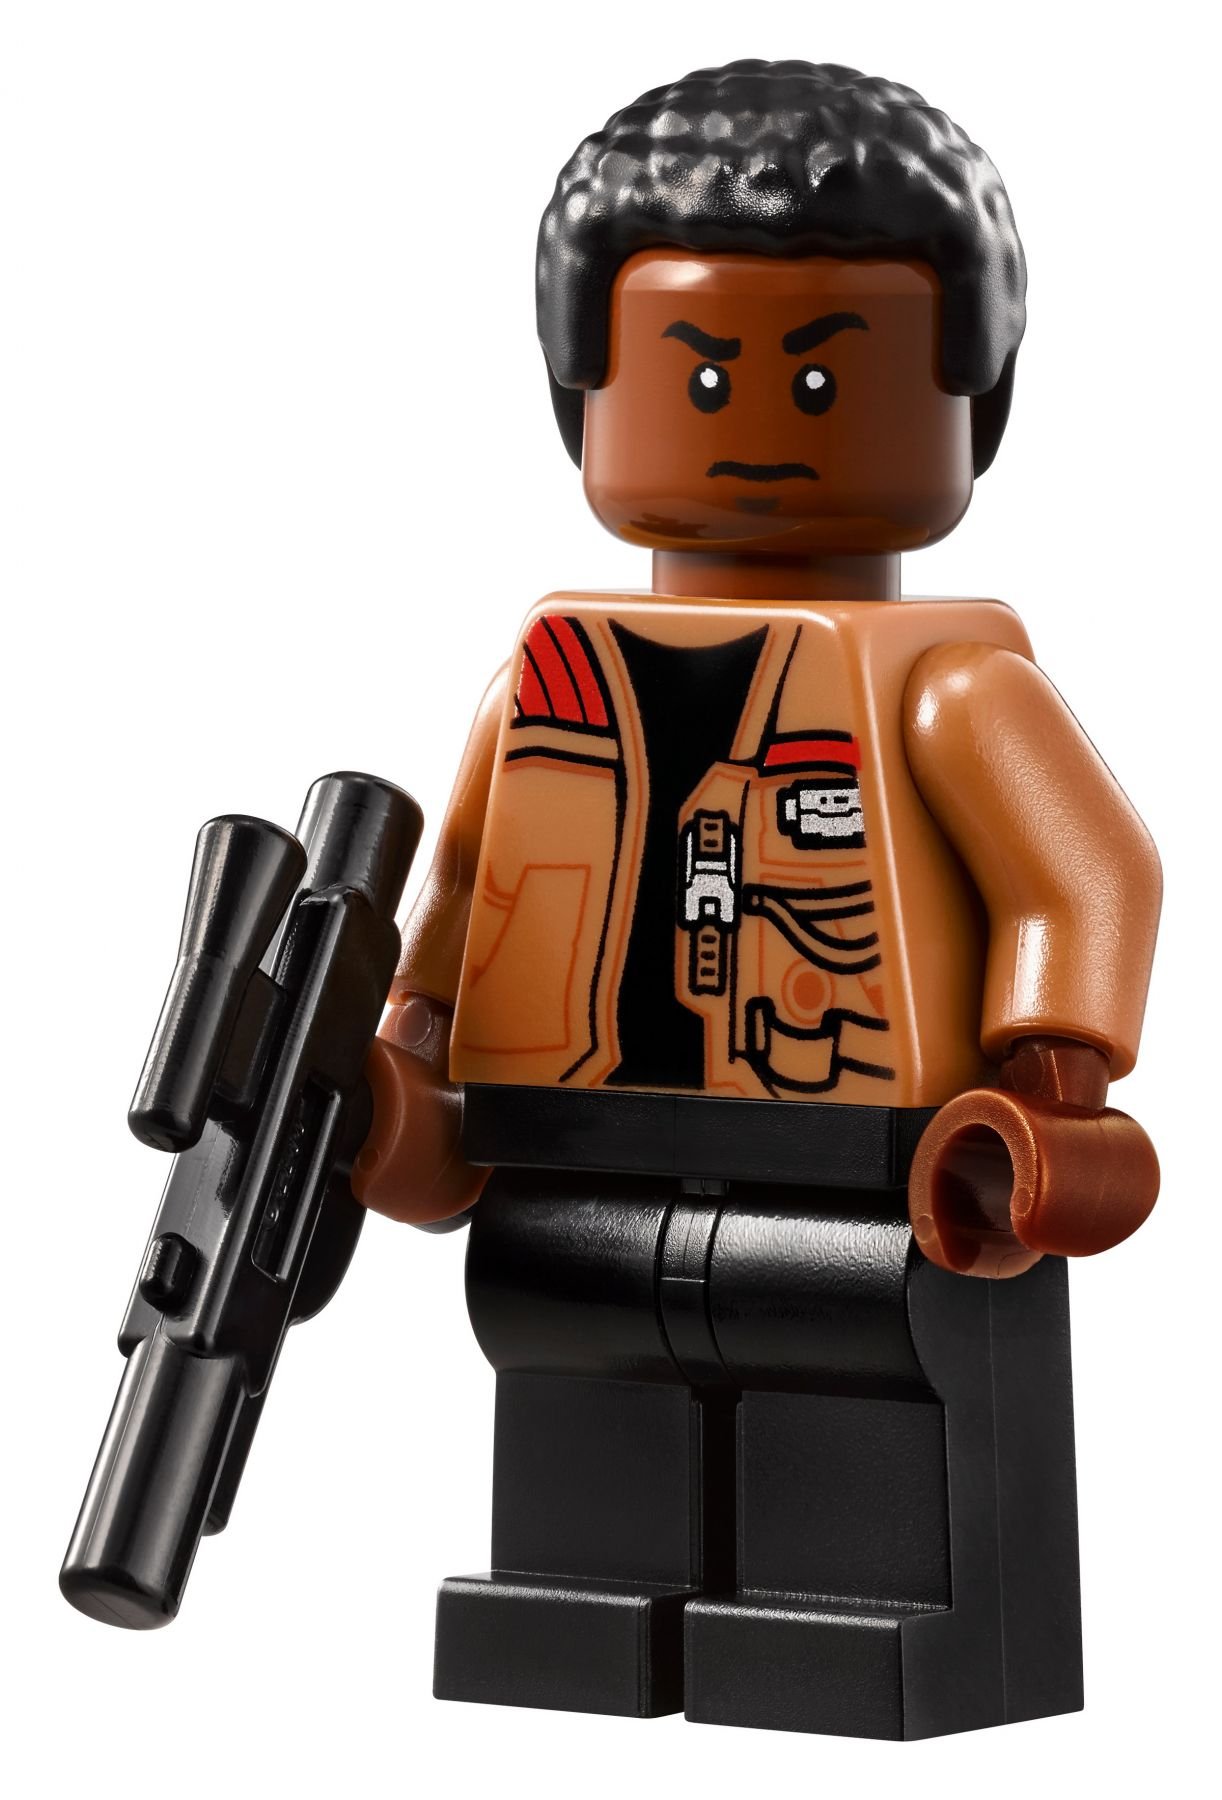 LEGO Star Wars 75192 Millennium Falcon™ LEGO_75192_alt19.jpg